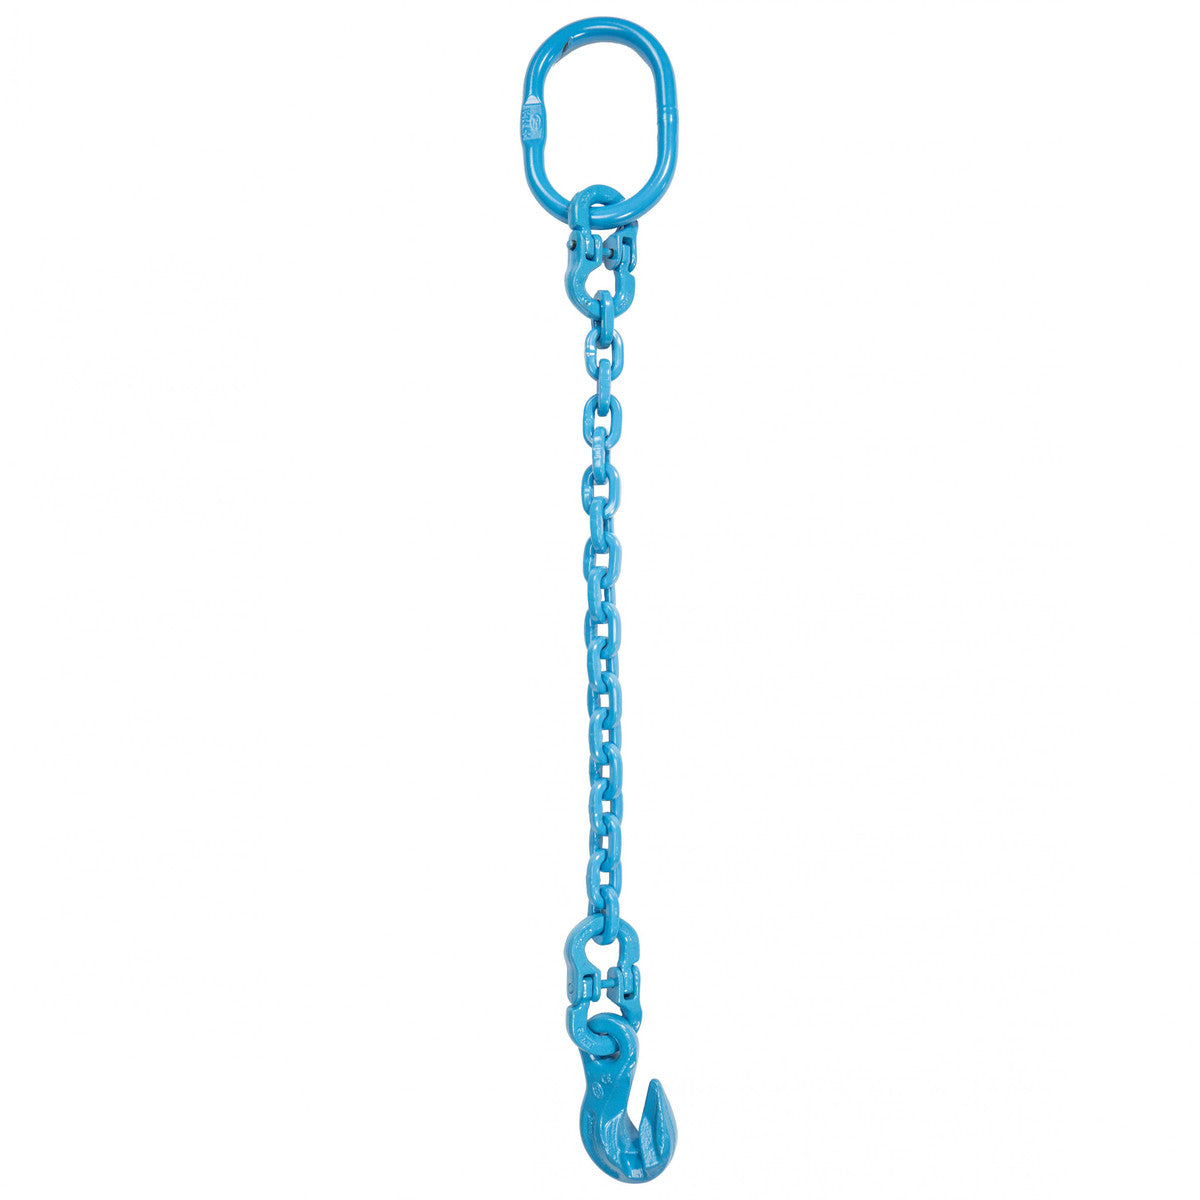 9/32" x 20' - Pewag Single Leg Chain Sling w/ Grab Hook - Grade 120